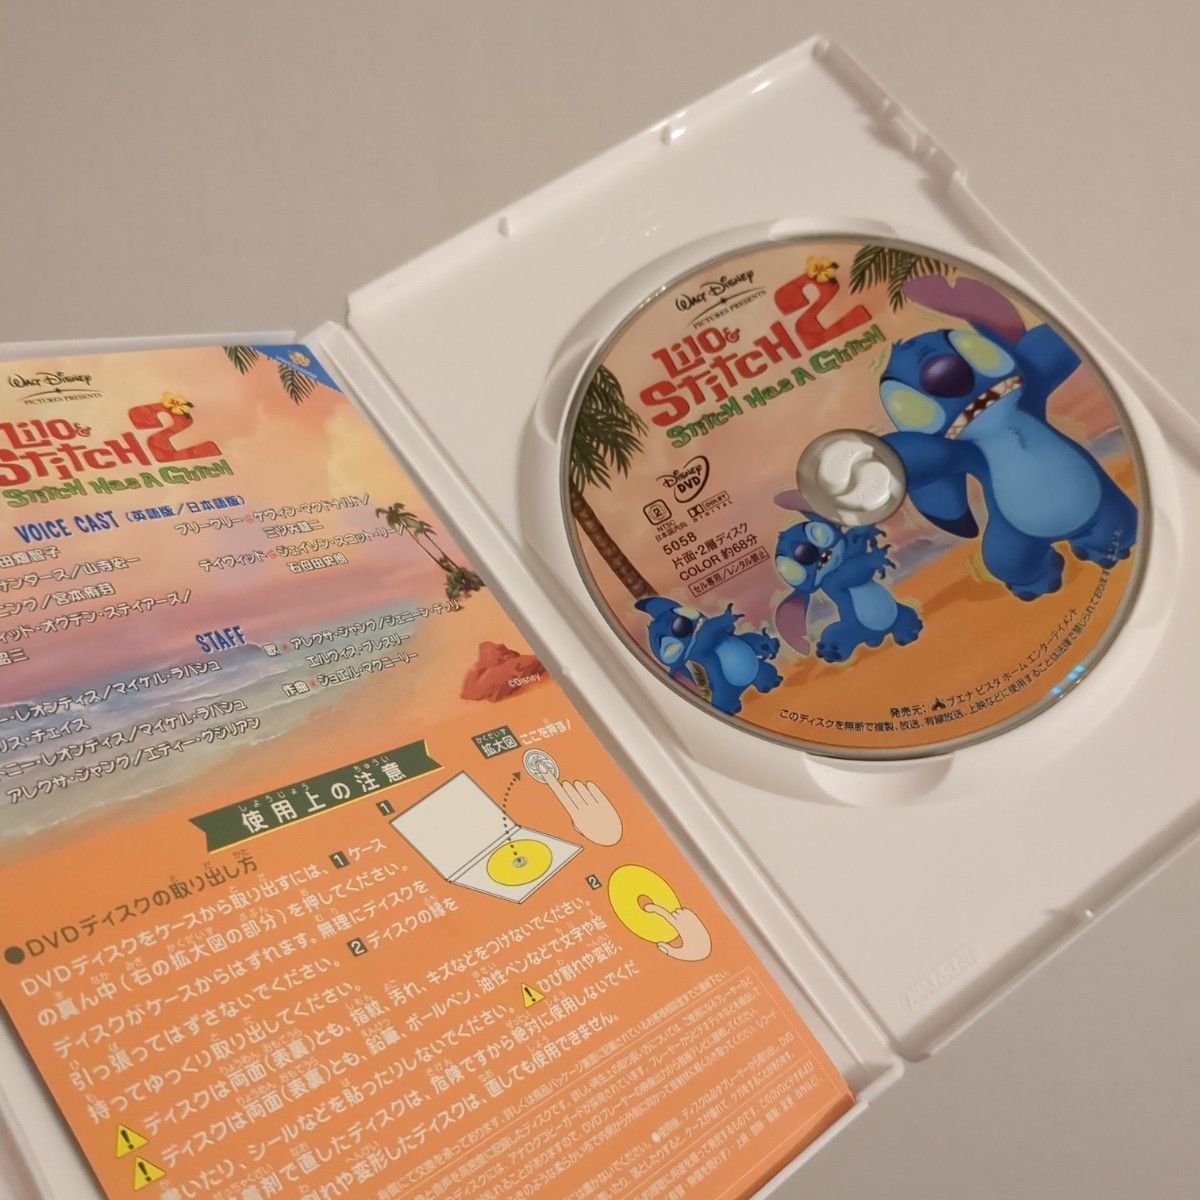 リロ・アンド・スティッチ2 DVD